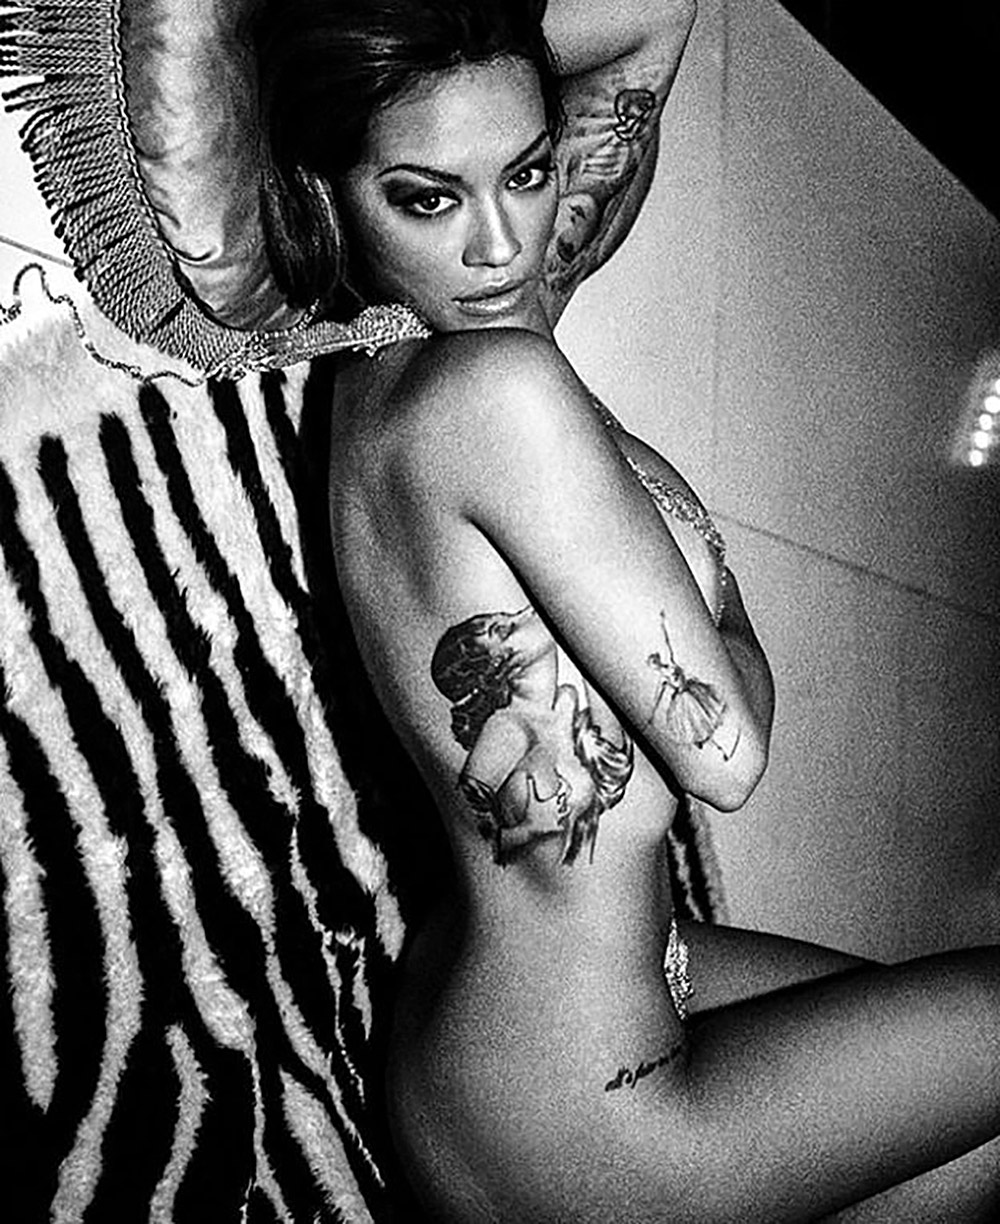 More Rita Ora Nude Pics.